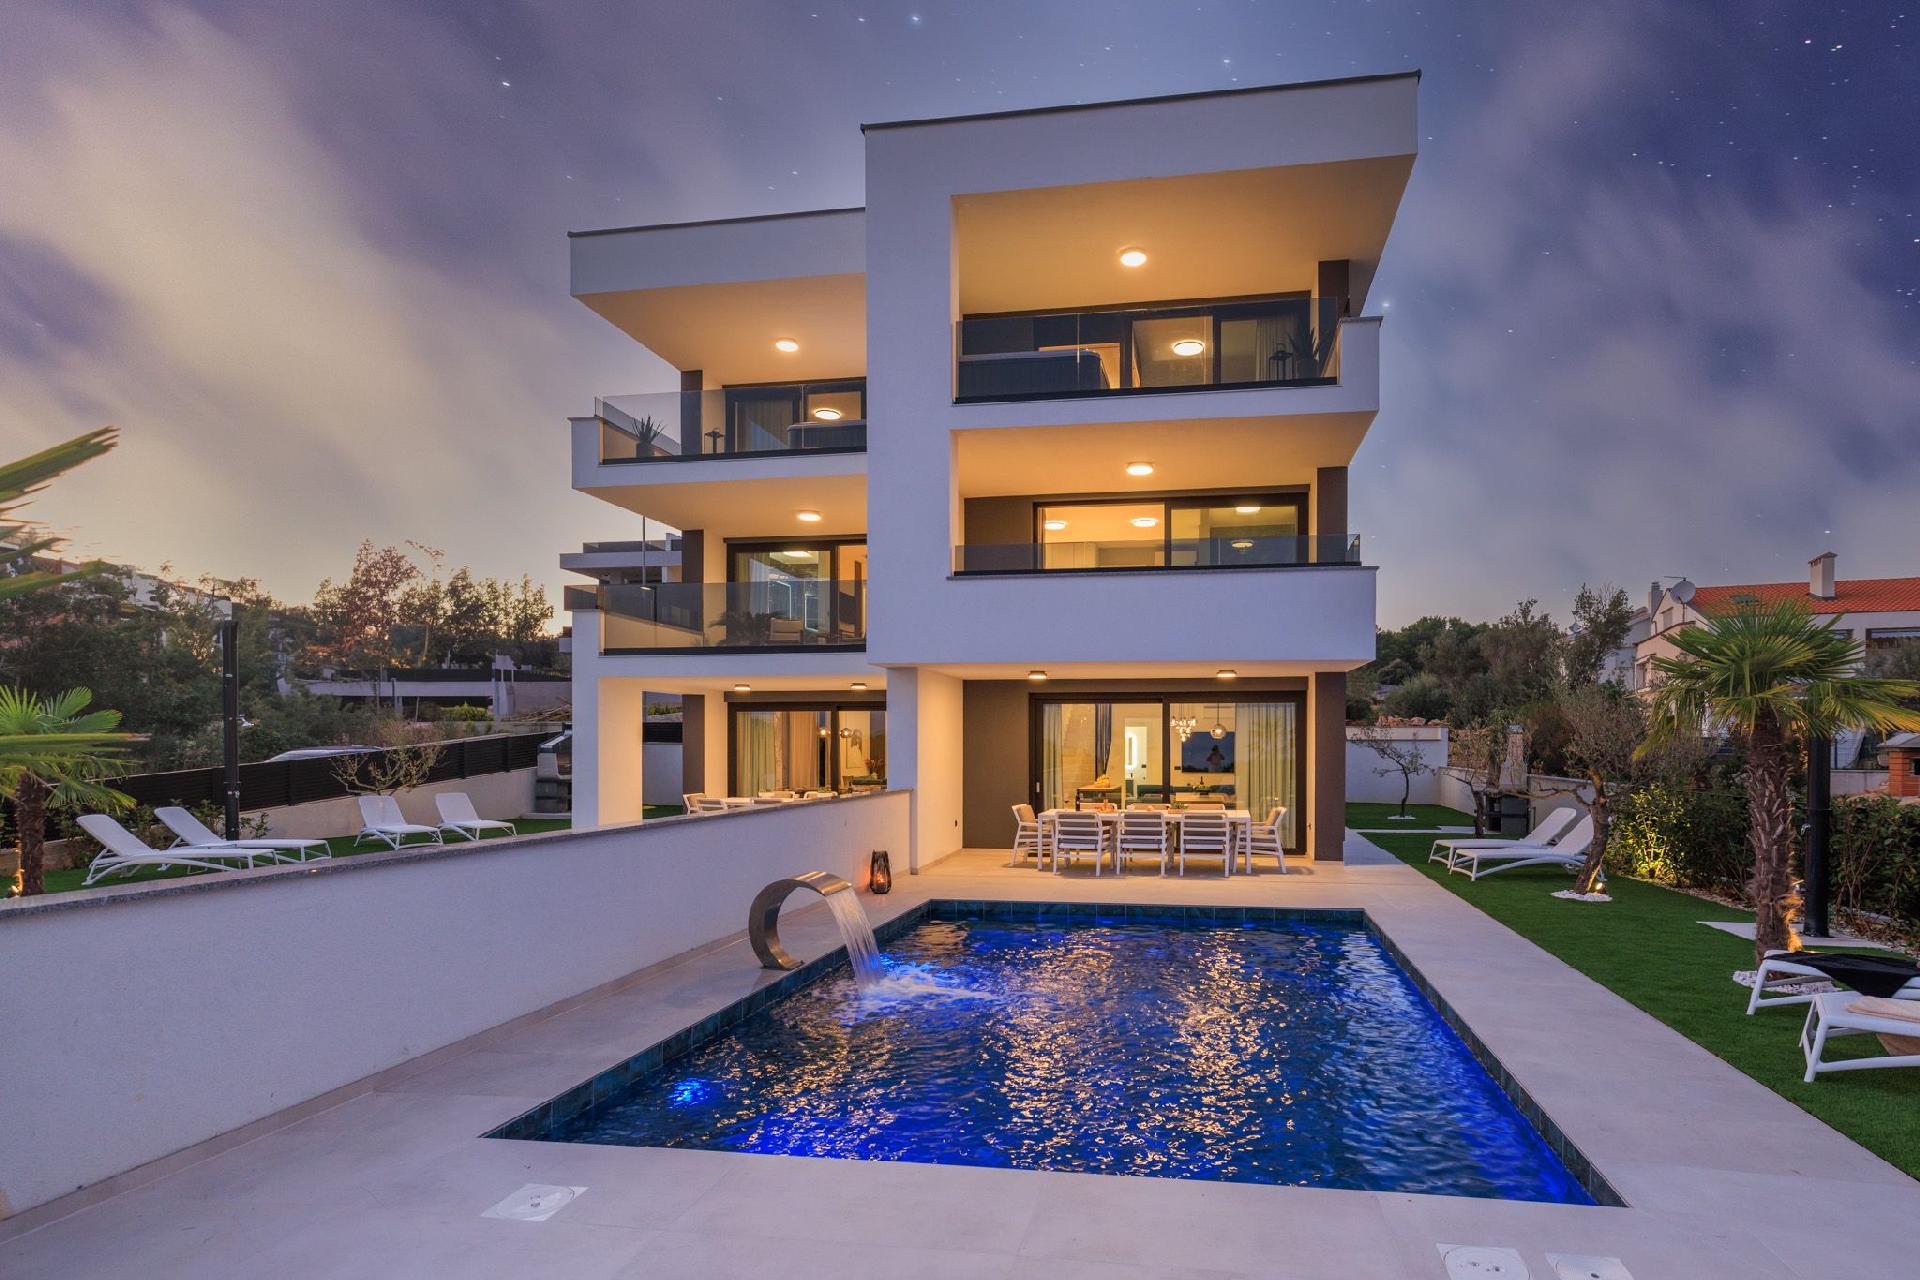 Neue moderne Villa mit Pool in der Nähe von d Ferienhaus in Europa